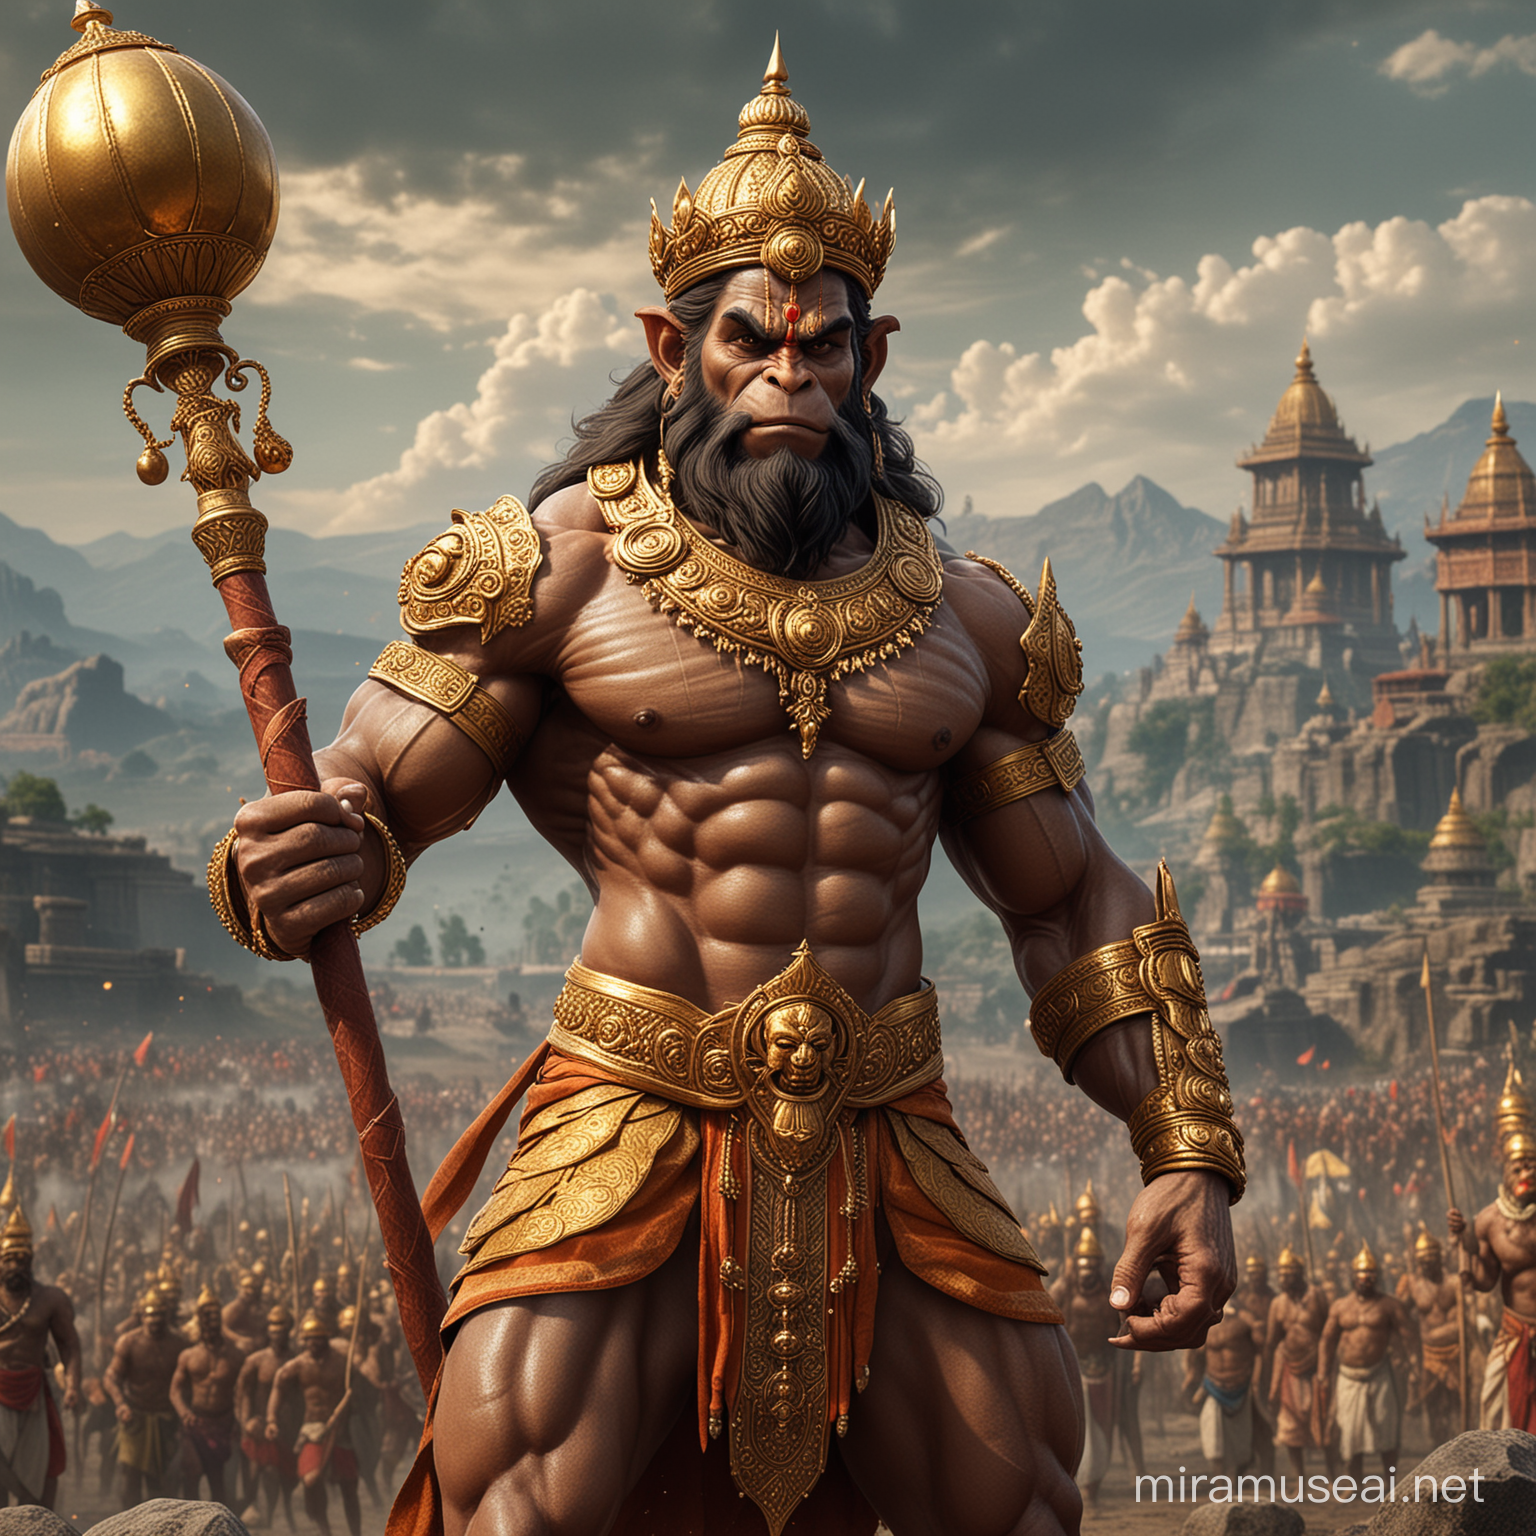 Majestic Hanuman Wielding Golden Mace Bomb on Battlefield